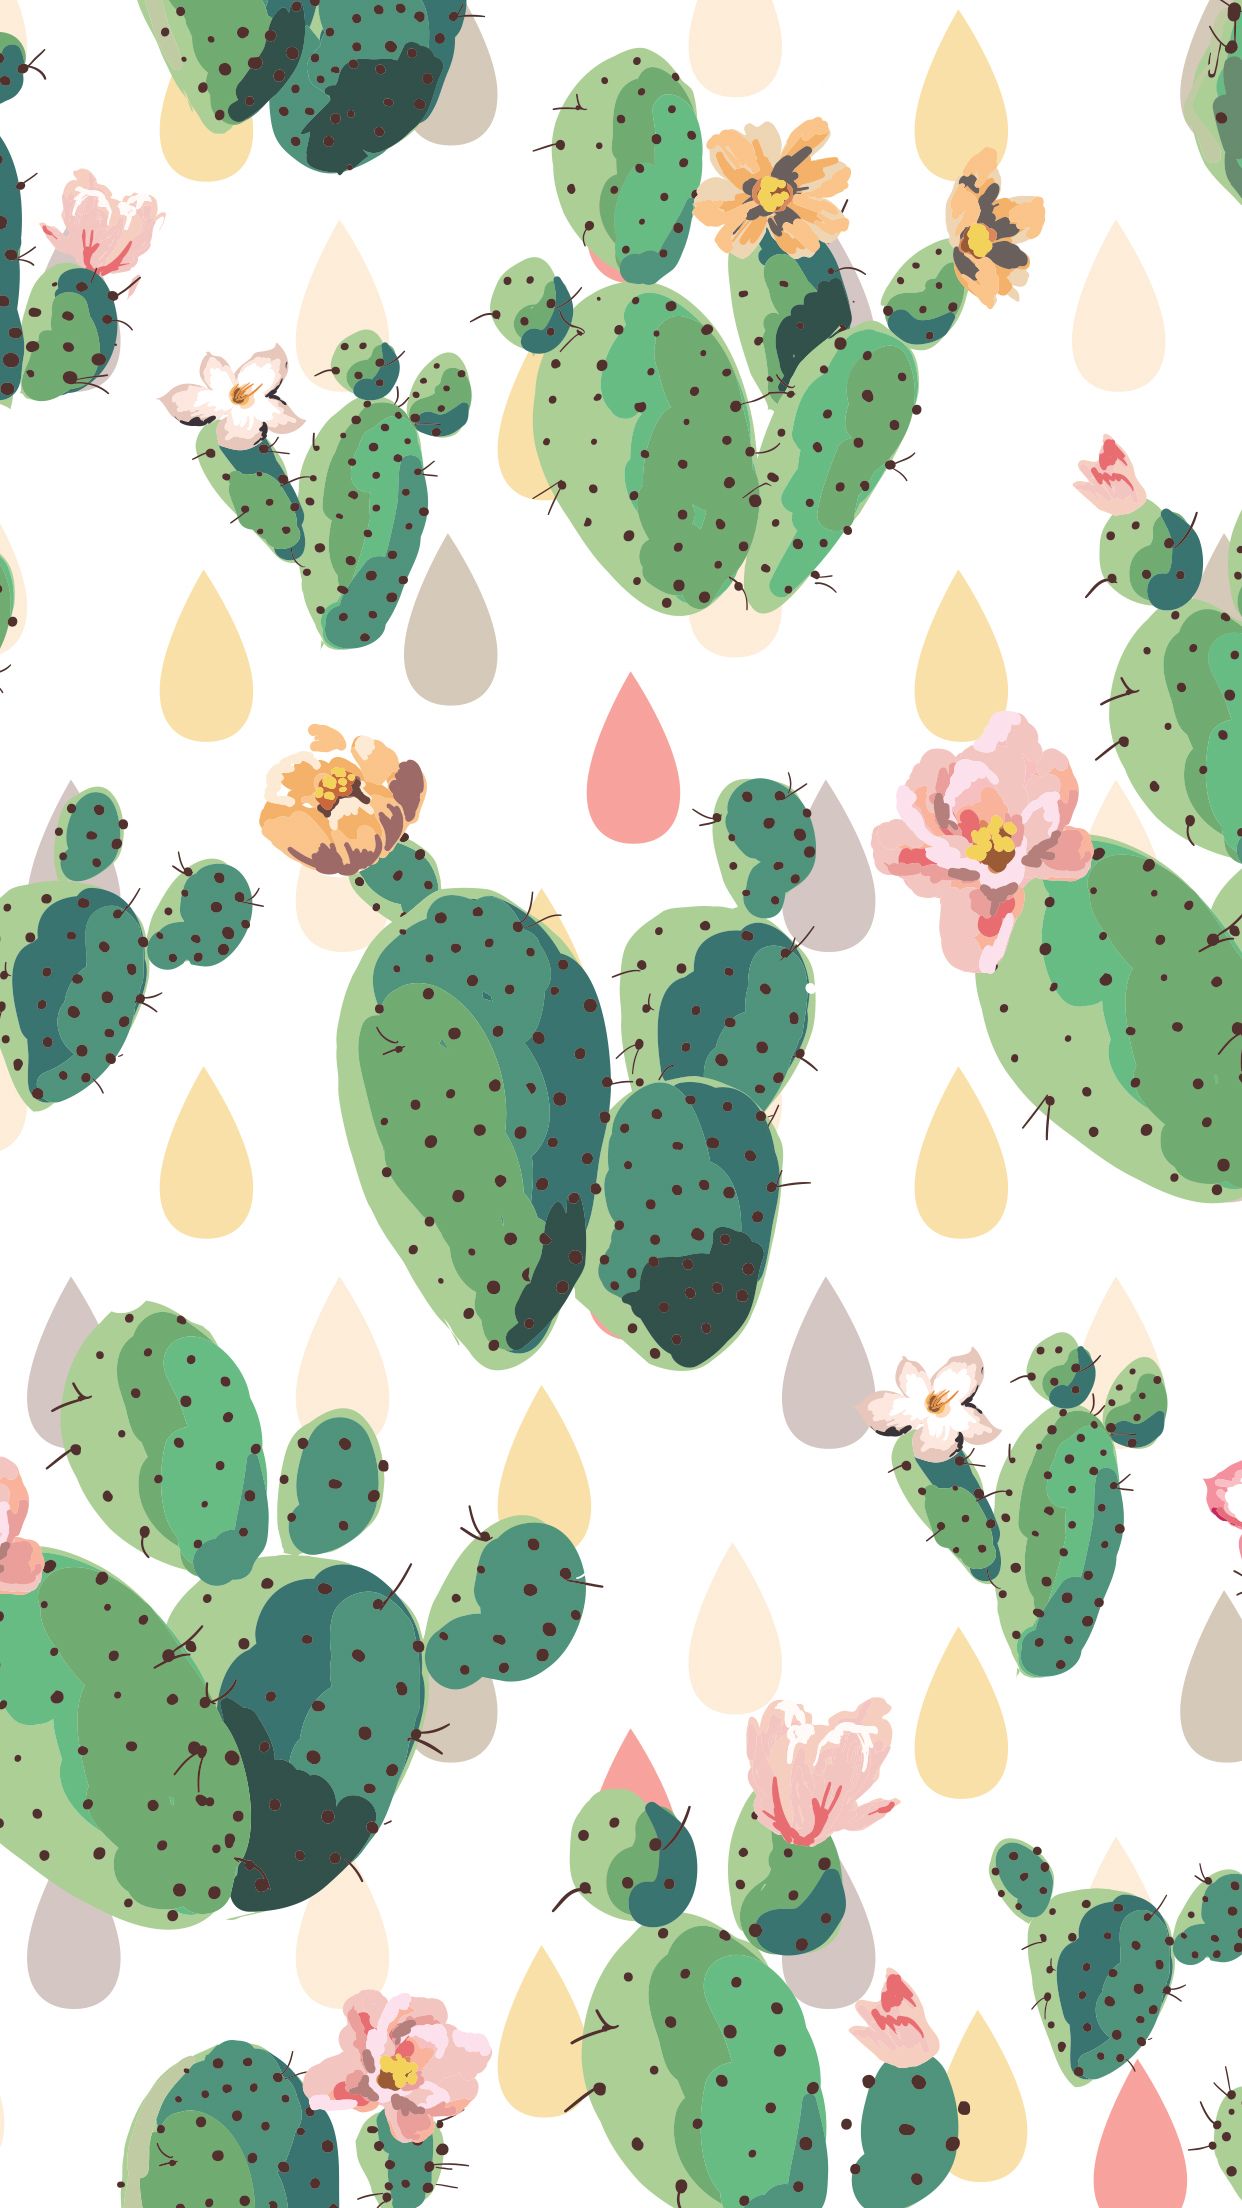 Mobile iphone cute cactus wallpaper. Screen savers wallpaper, Cute screen savers, iPhone screen savers